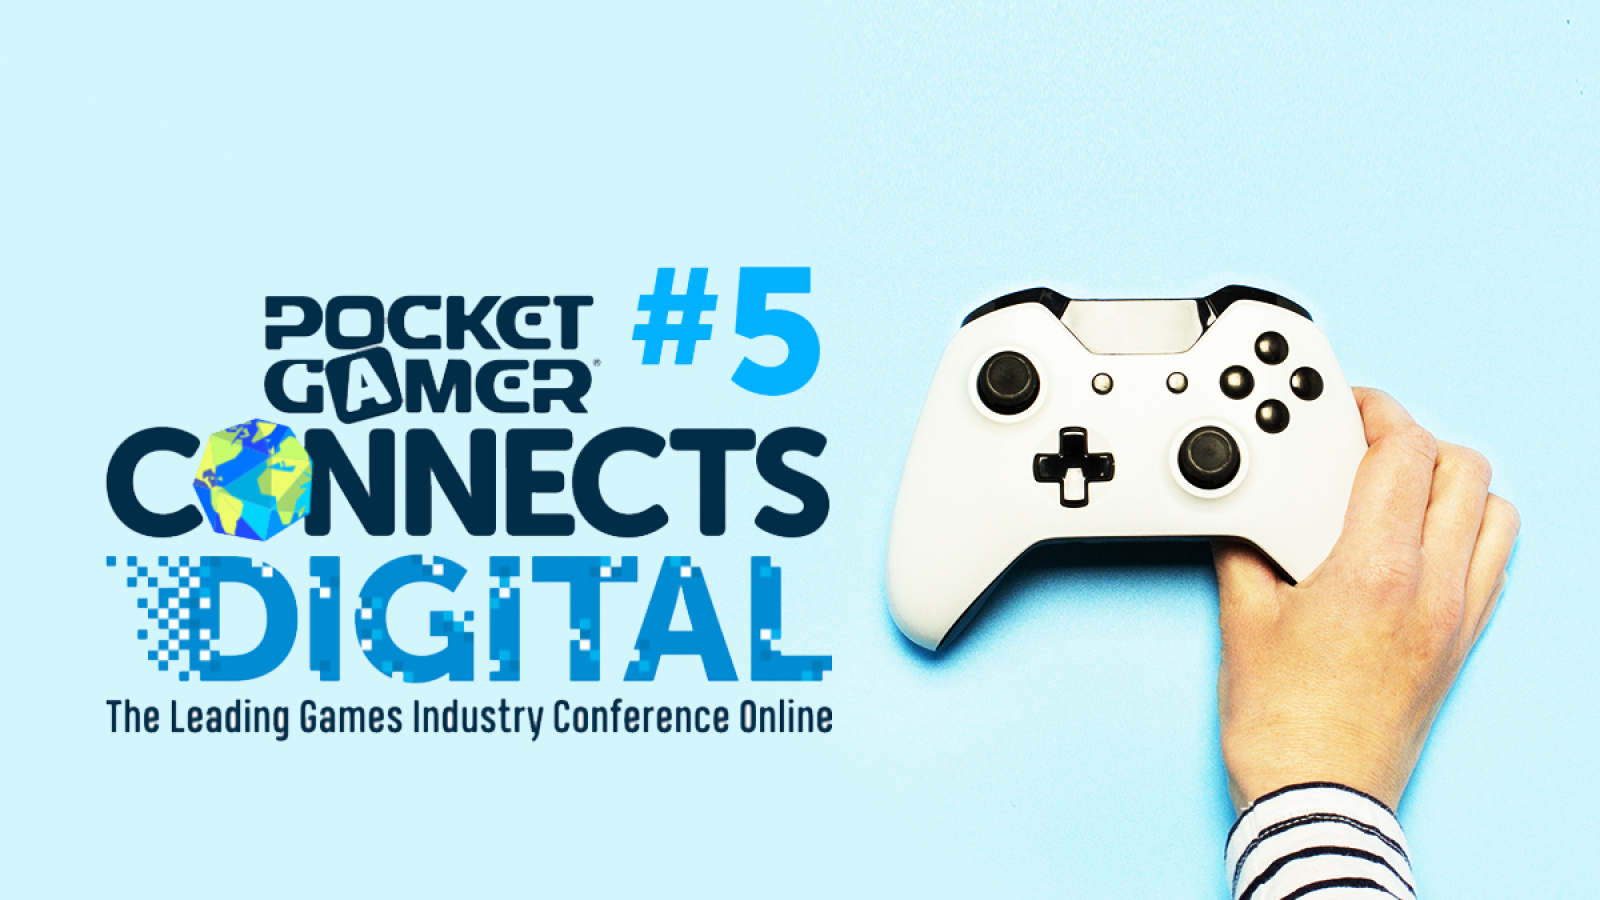 Pocket Gamer Connects Digital #5